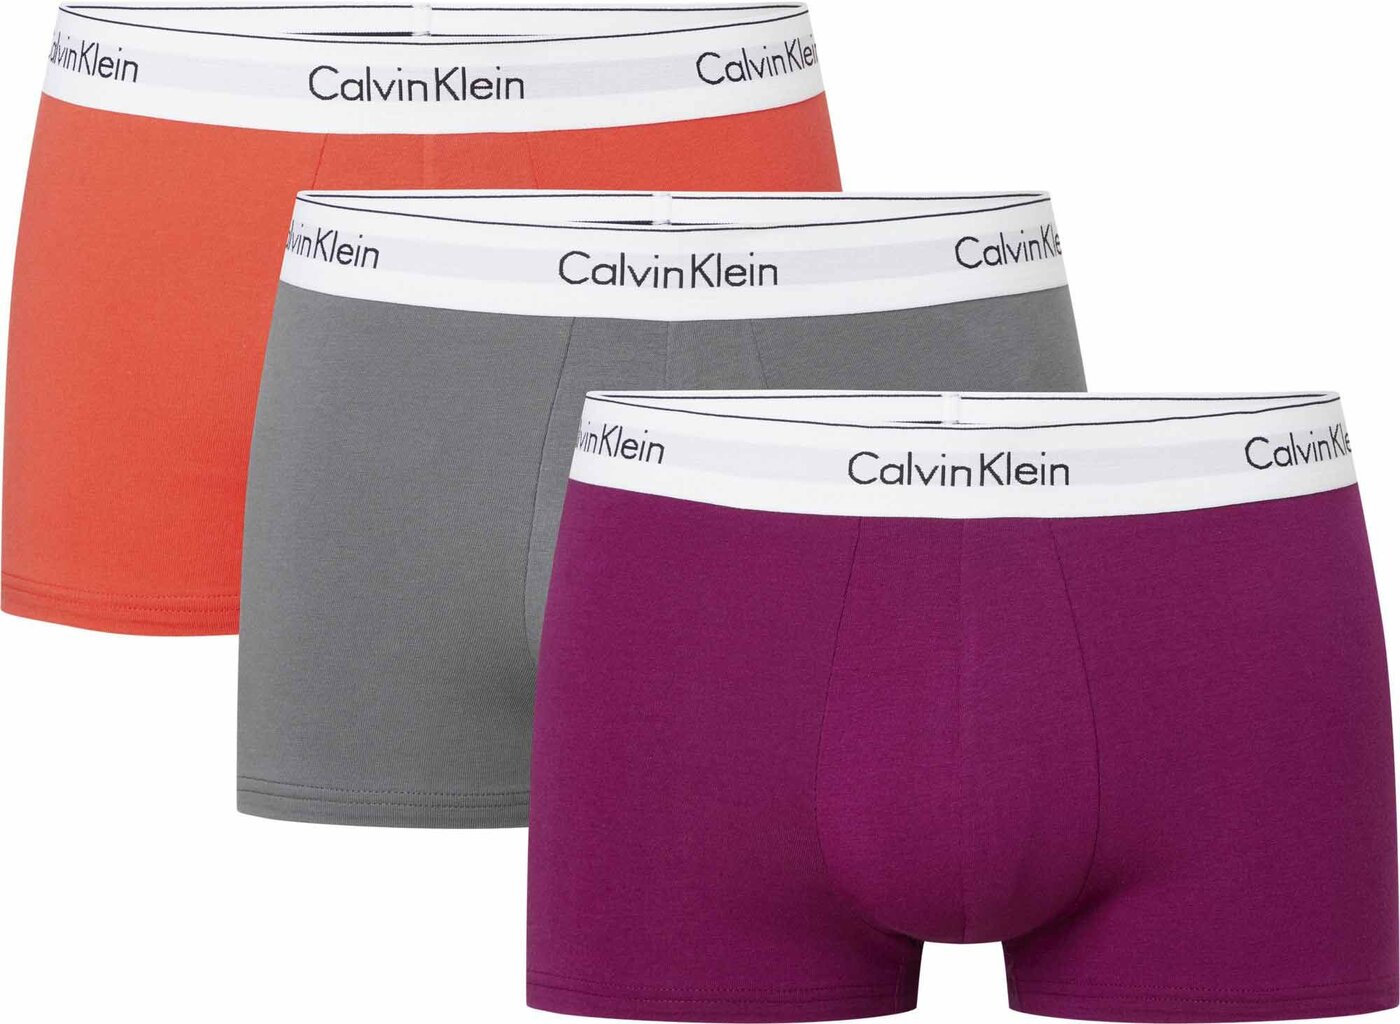 Vyriškos trumpikės Calvin Klein 52892, įvairių spalvų kaina ir informacija | Trumpikės | pigu.lt